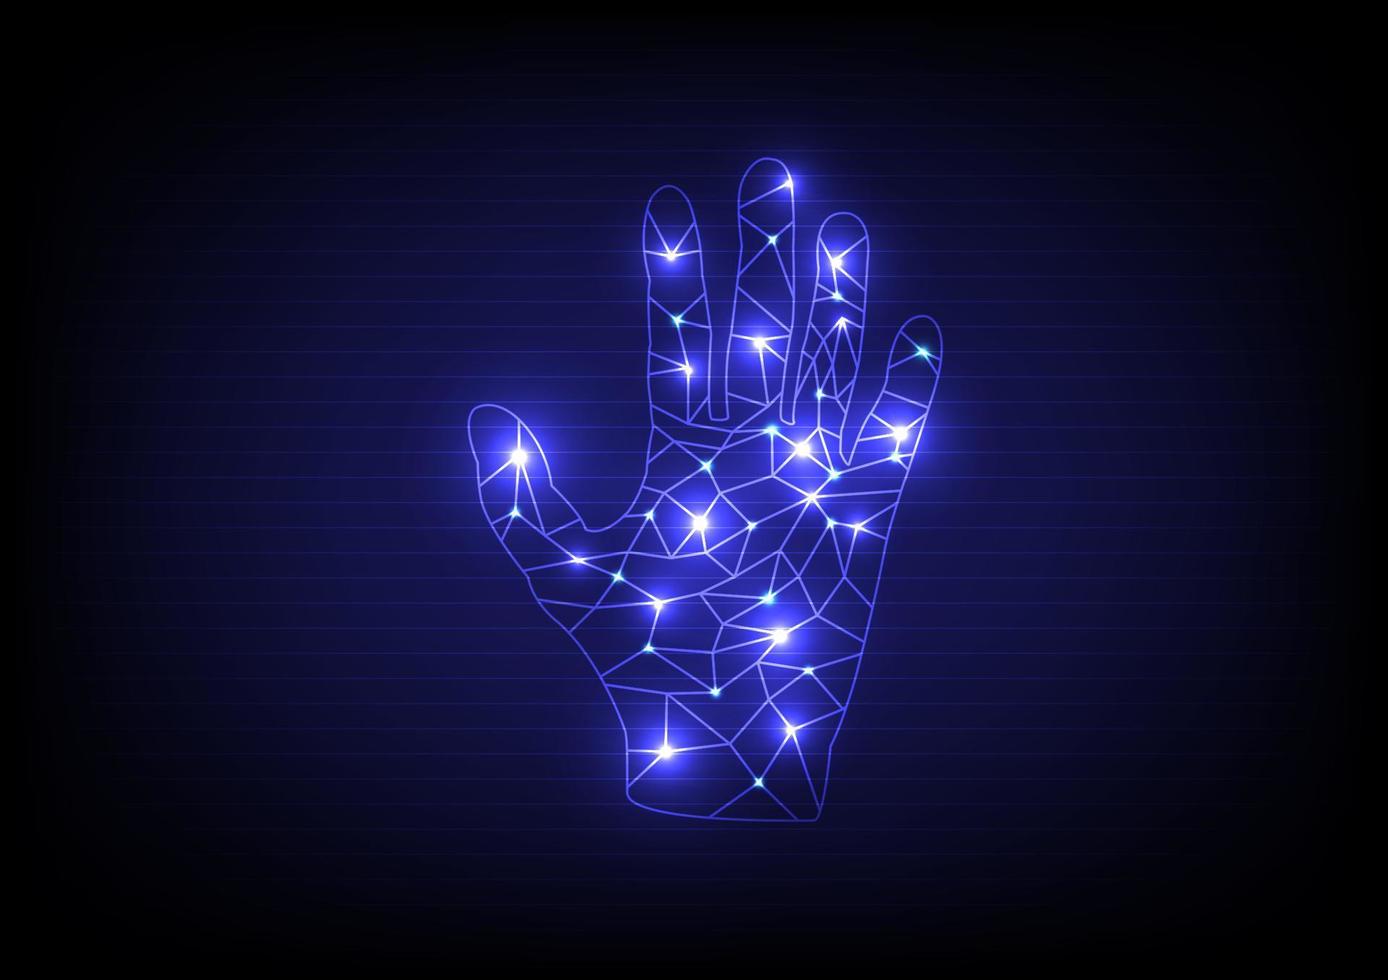 abstrakte offene handfläche in form eines drahtmodells mit leuchtenden lichtern. Vektor-Hand-up-Illustration auf blauem Hintergrund vektor